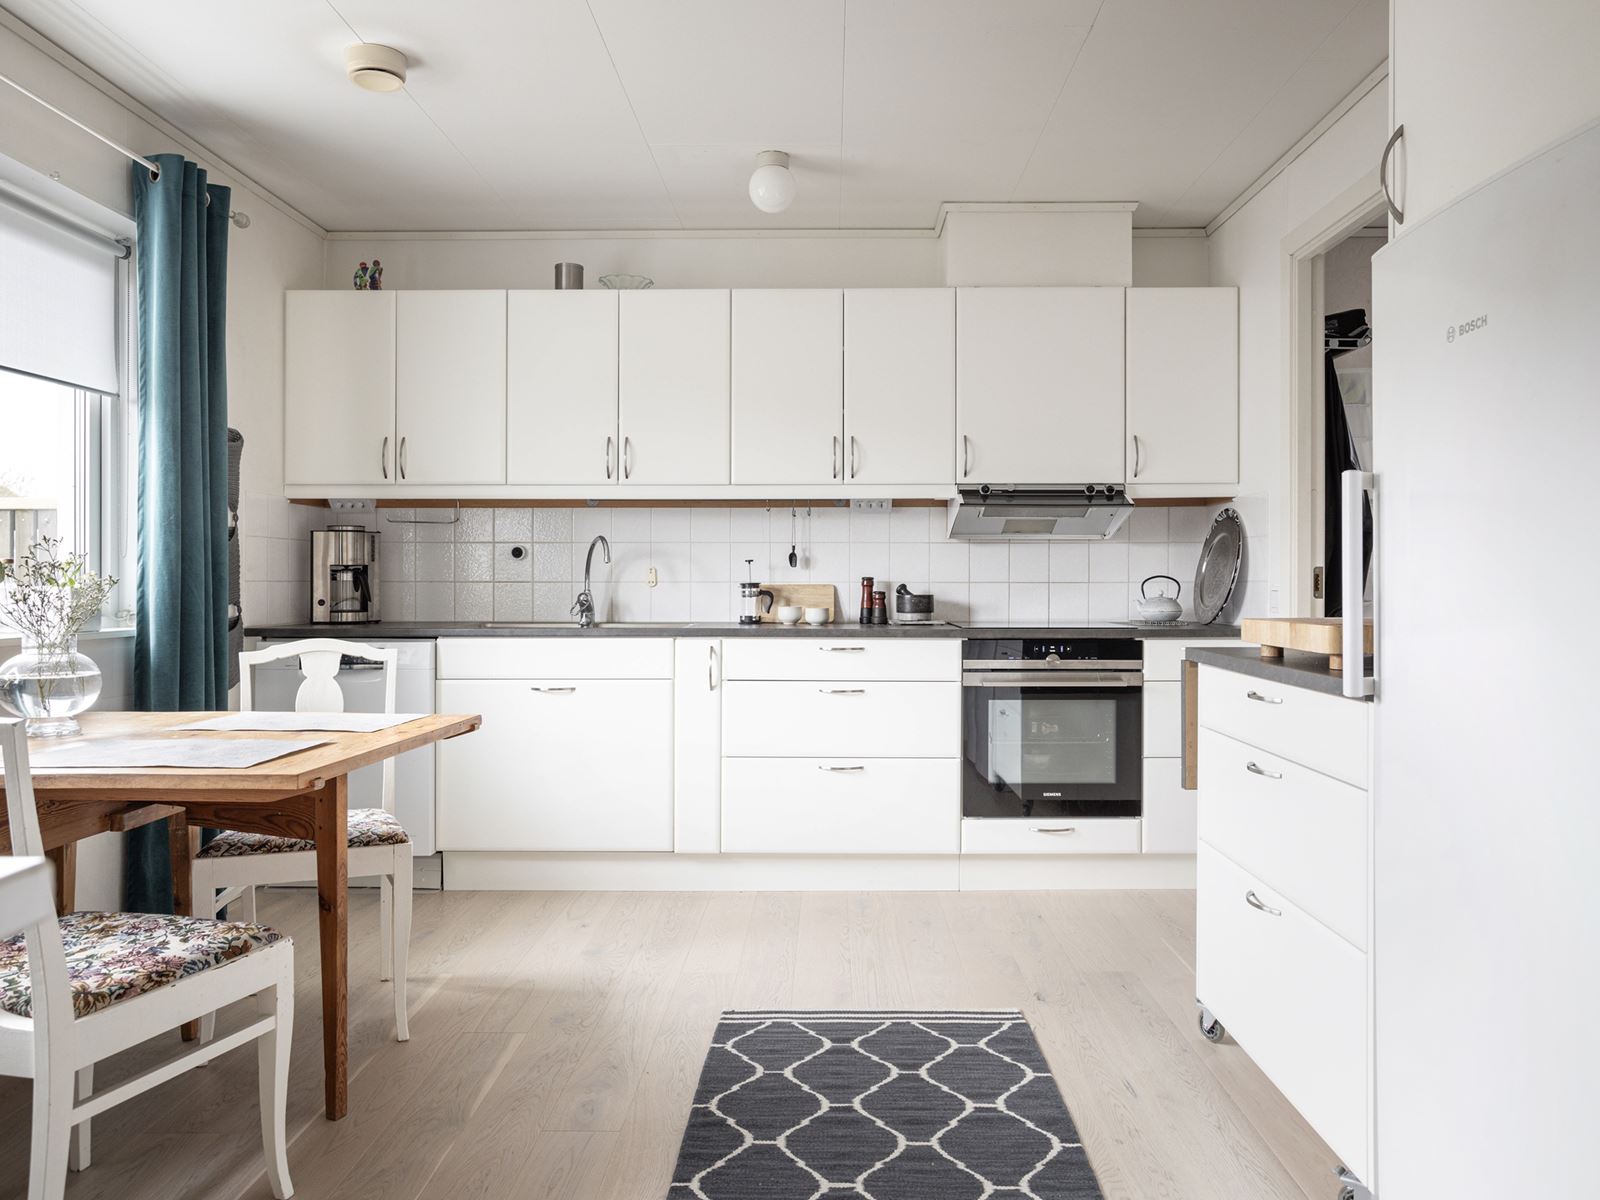 Uppdaterat kök med nya golv och köksluckor. Smalbacksvägen 12 - Bjurfors